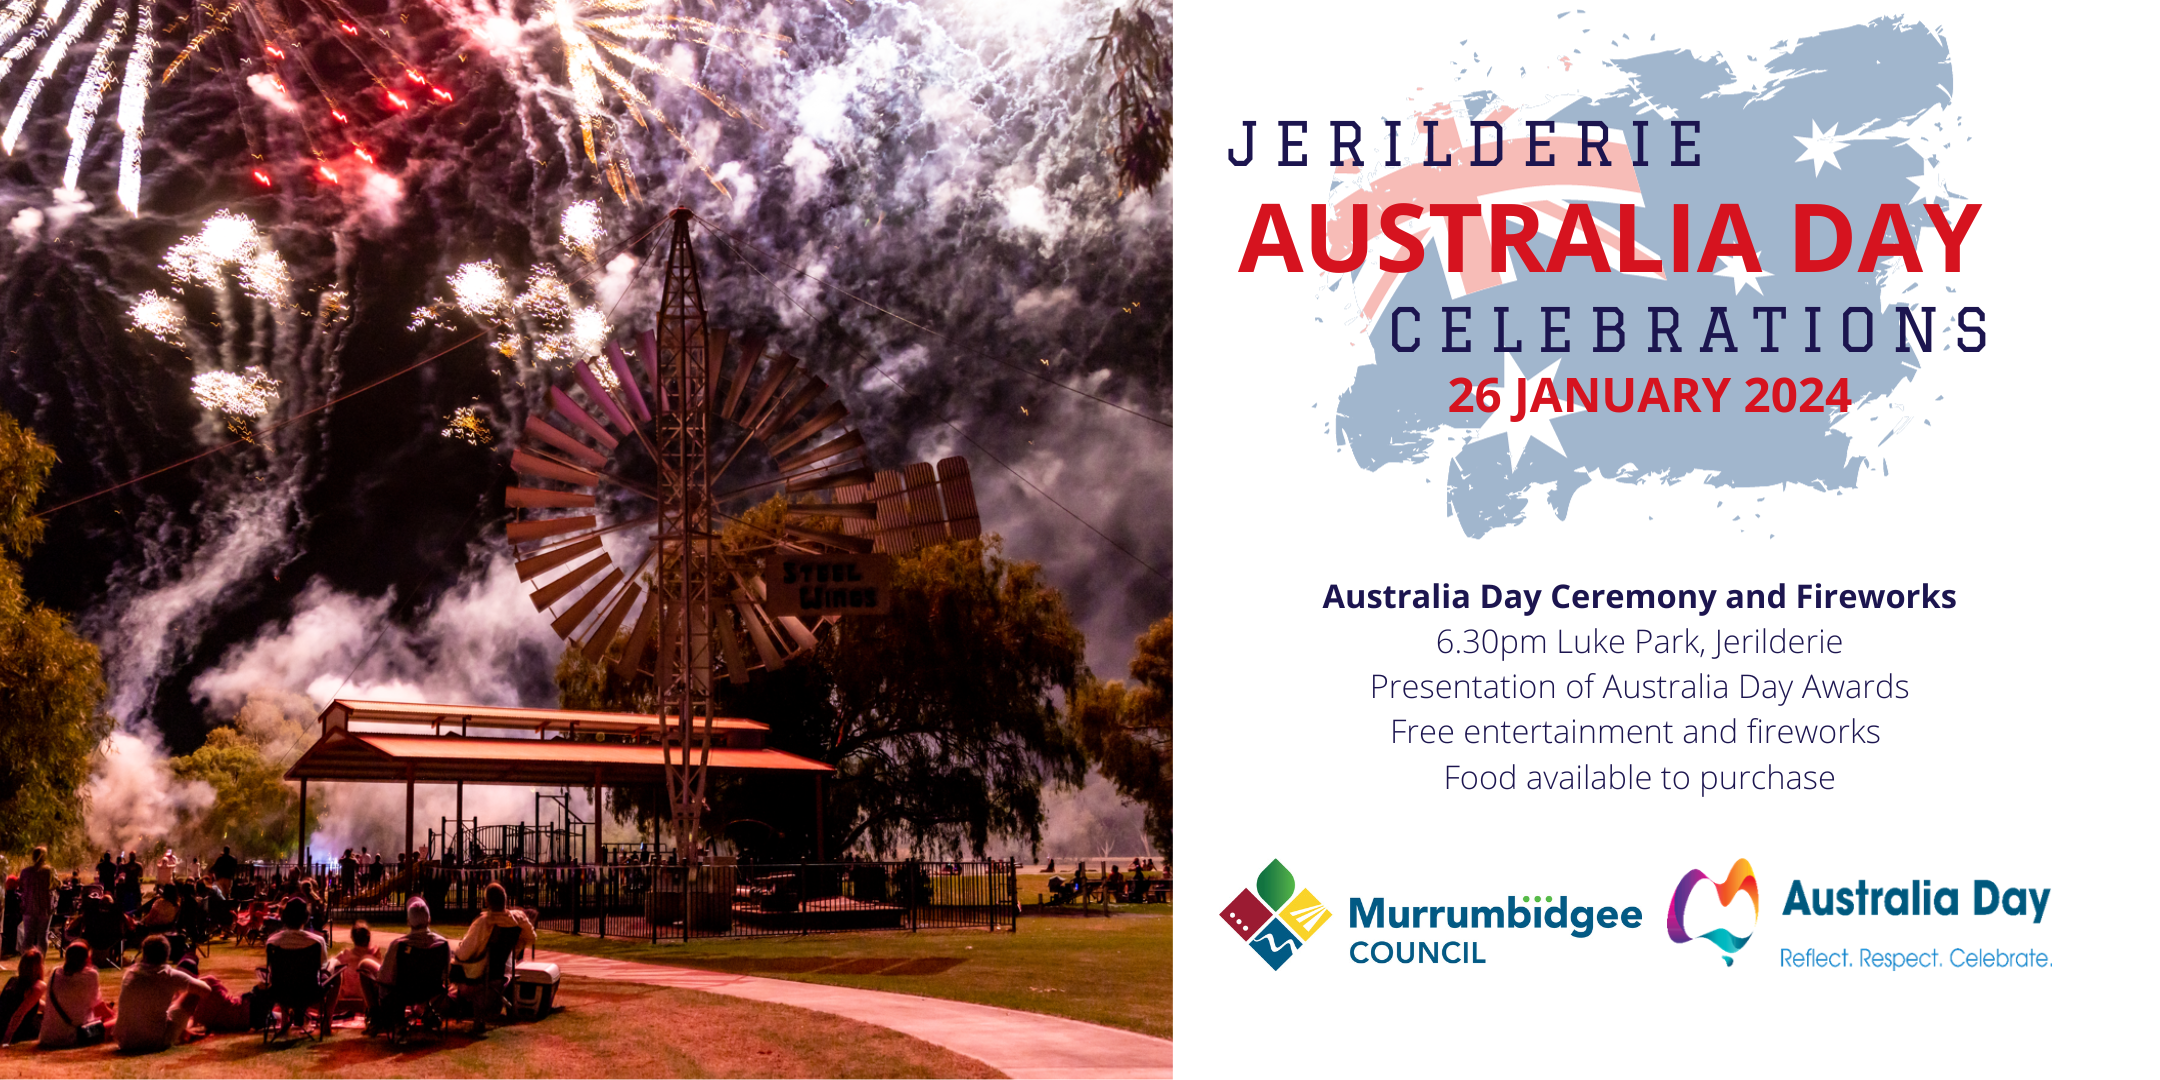 Australia Day Celebrations in Jerilderie